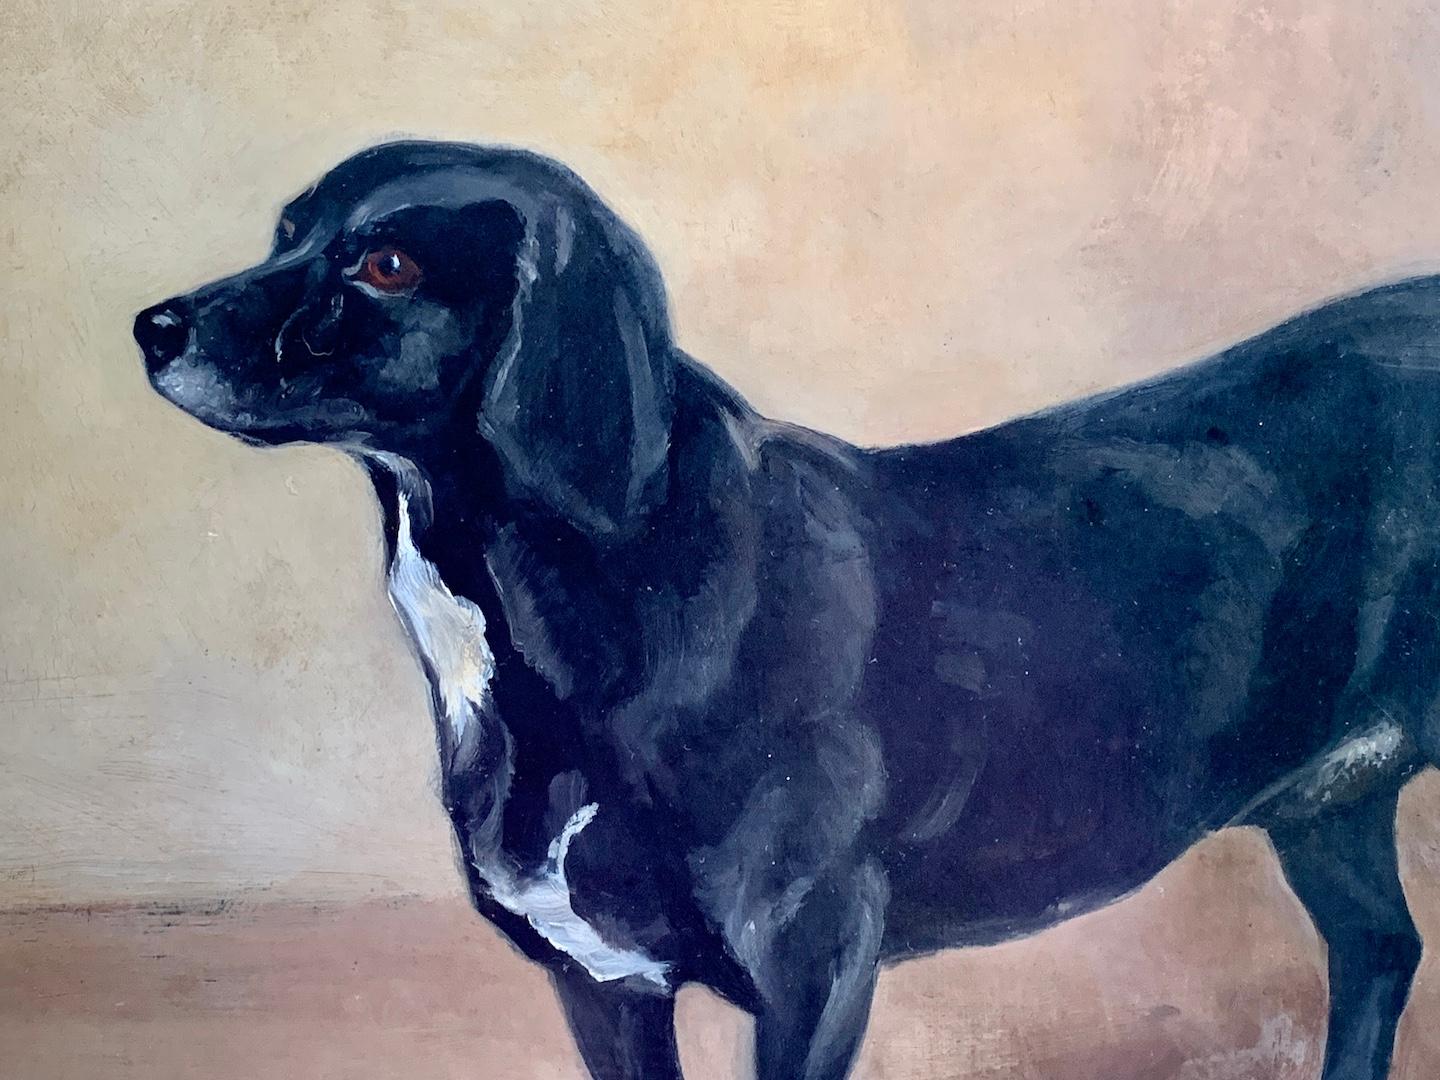 W. Redworth, Englisches Porträt eines Terriers, um 1935

Wunderschönes Porträt in Öl auf Leinwand. 

Ein sehr englisches Tierporträt und ein sehr gut gemaltes Gemälde, gerahmt in einem erstaunlichen antiken Blattgoldrahmen.